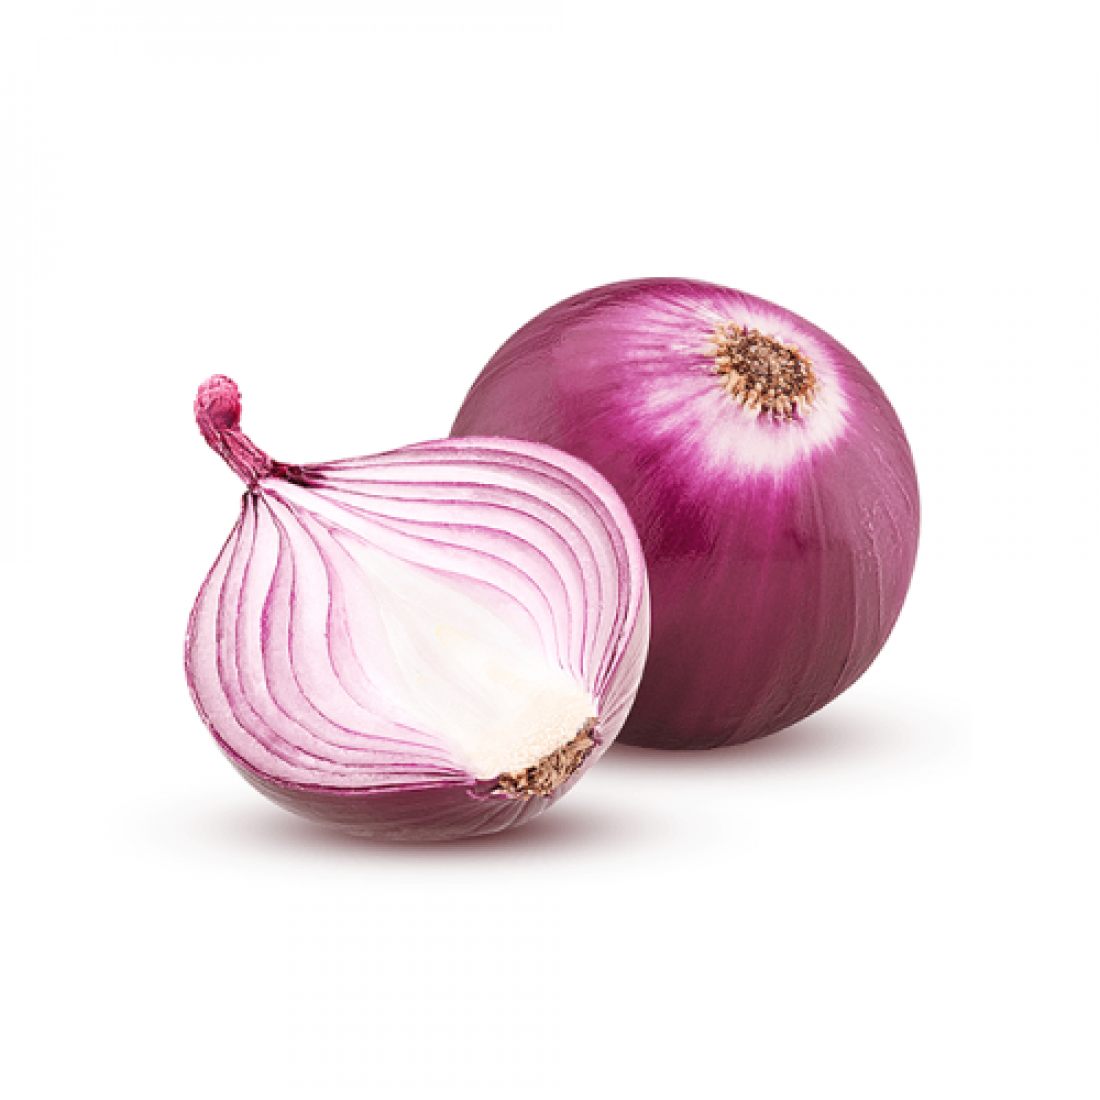 Onions (1 Bag)